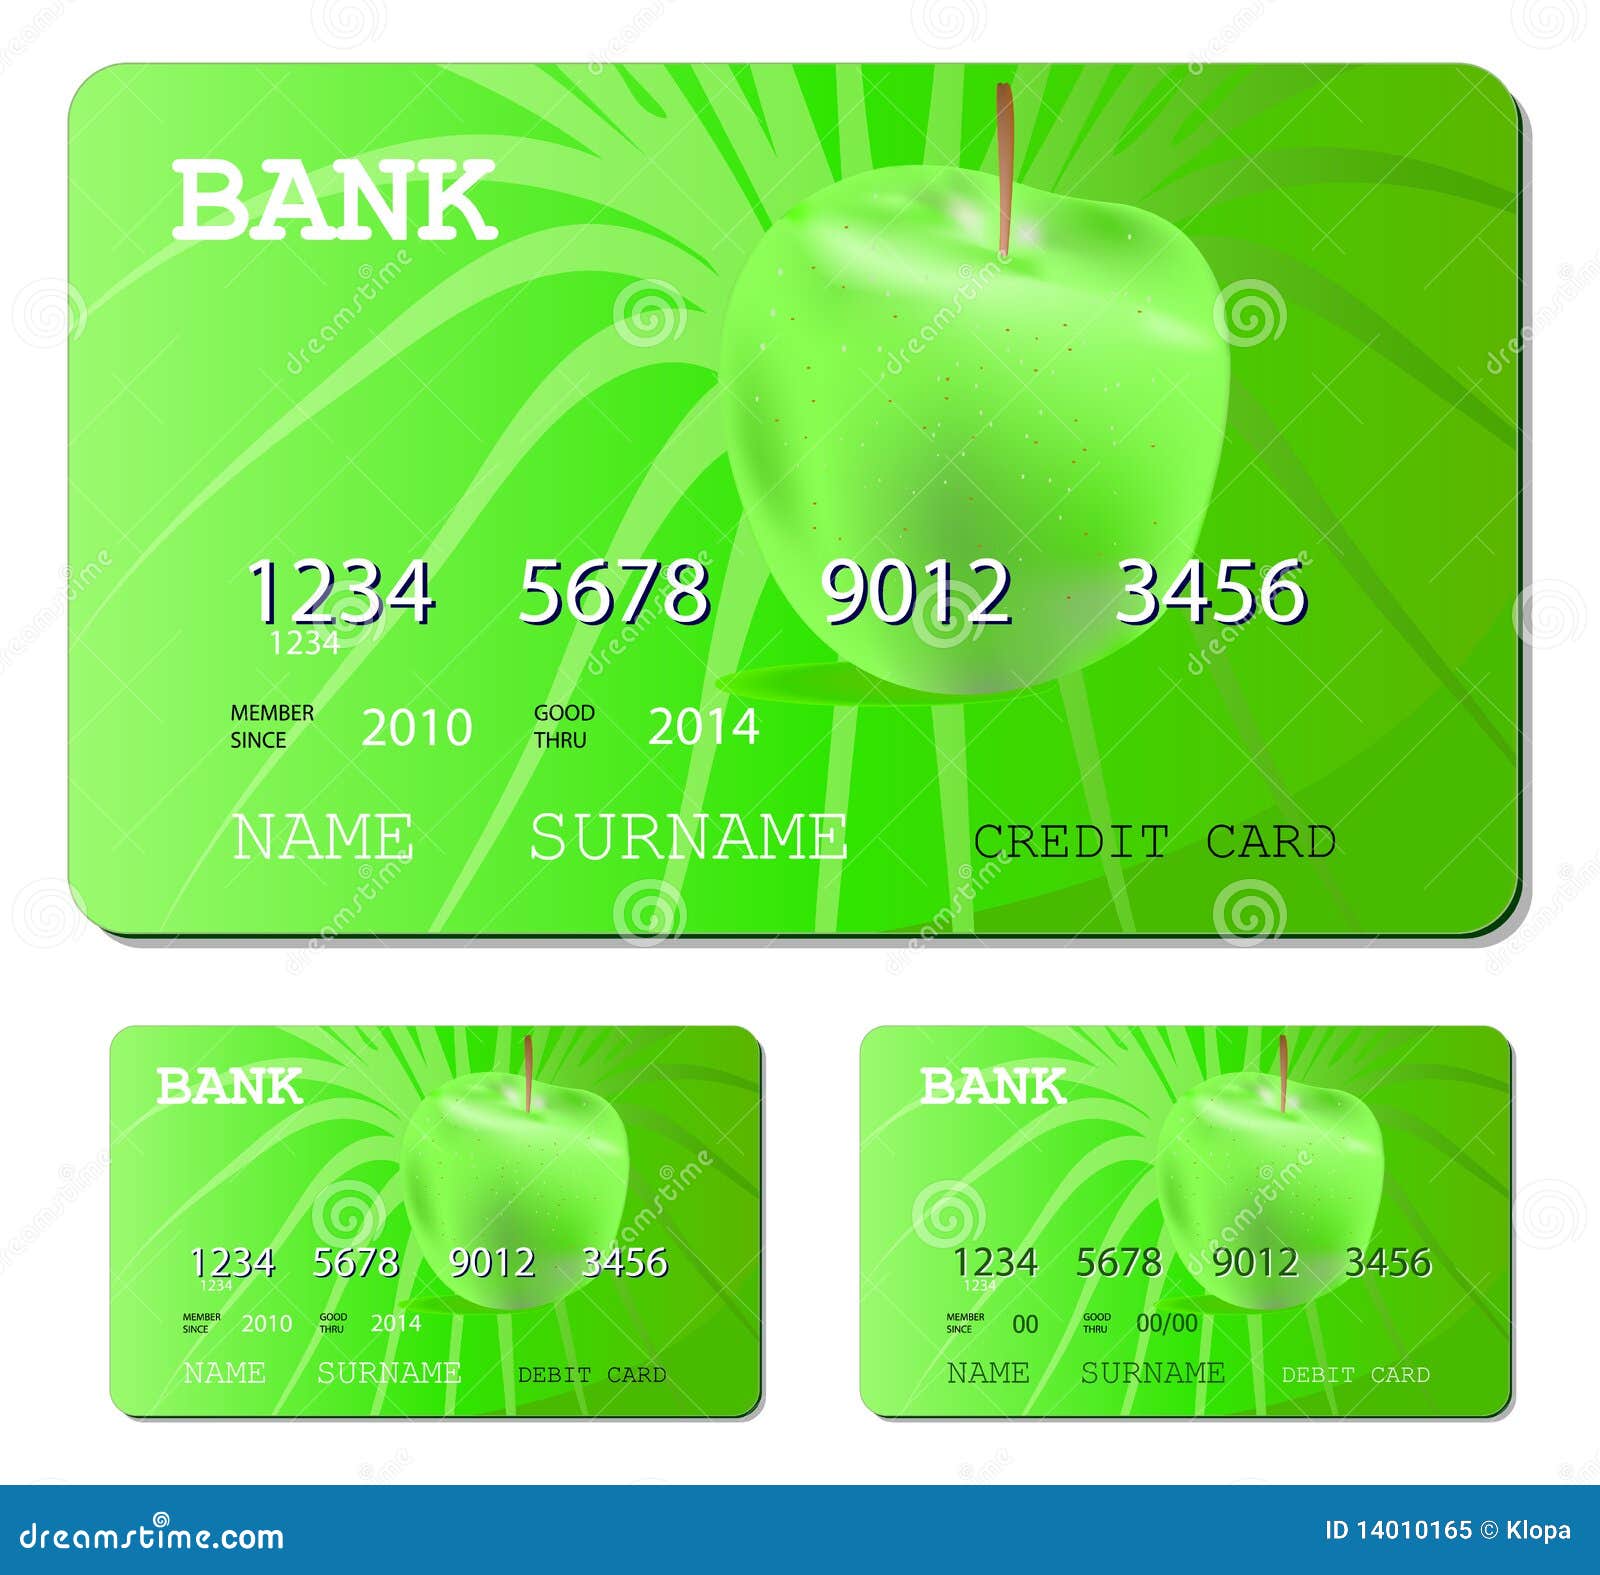 Банковская карта зеленого цвета. Visa credit Cards 2022. Fidelity Card. Visa Card 2022.